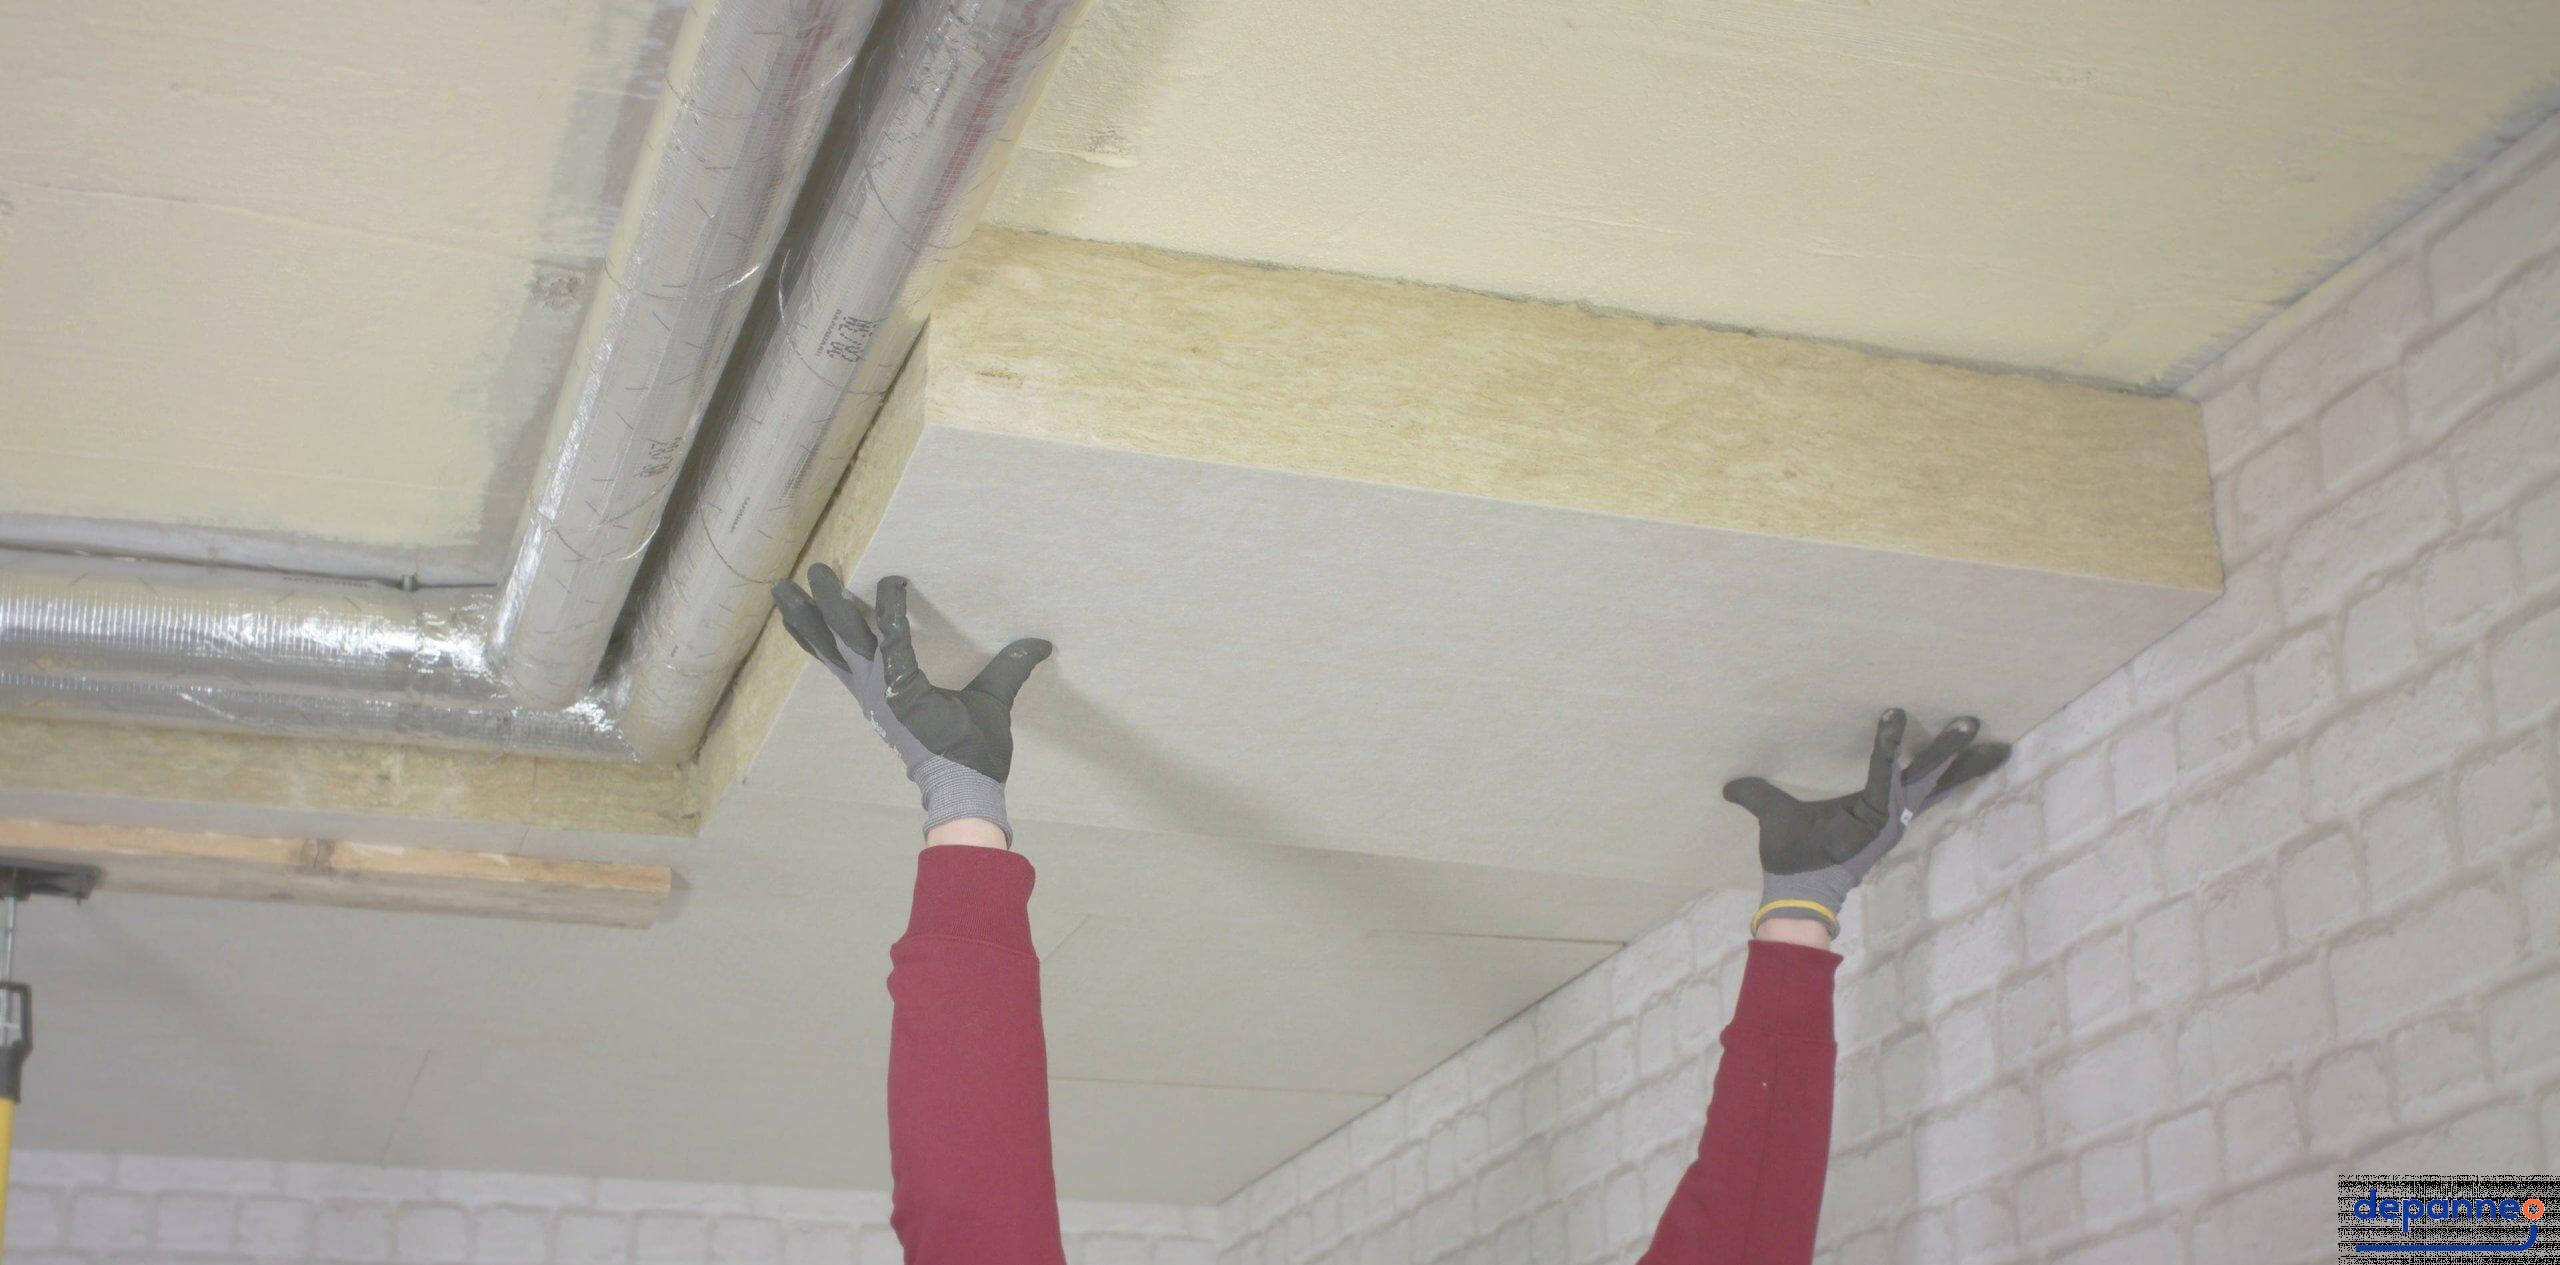 Comment réaliser un faux plafond thermique ?